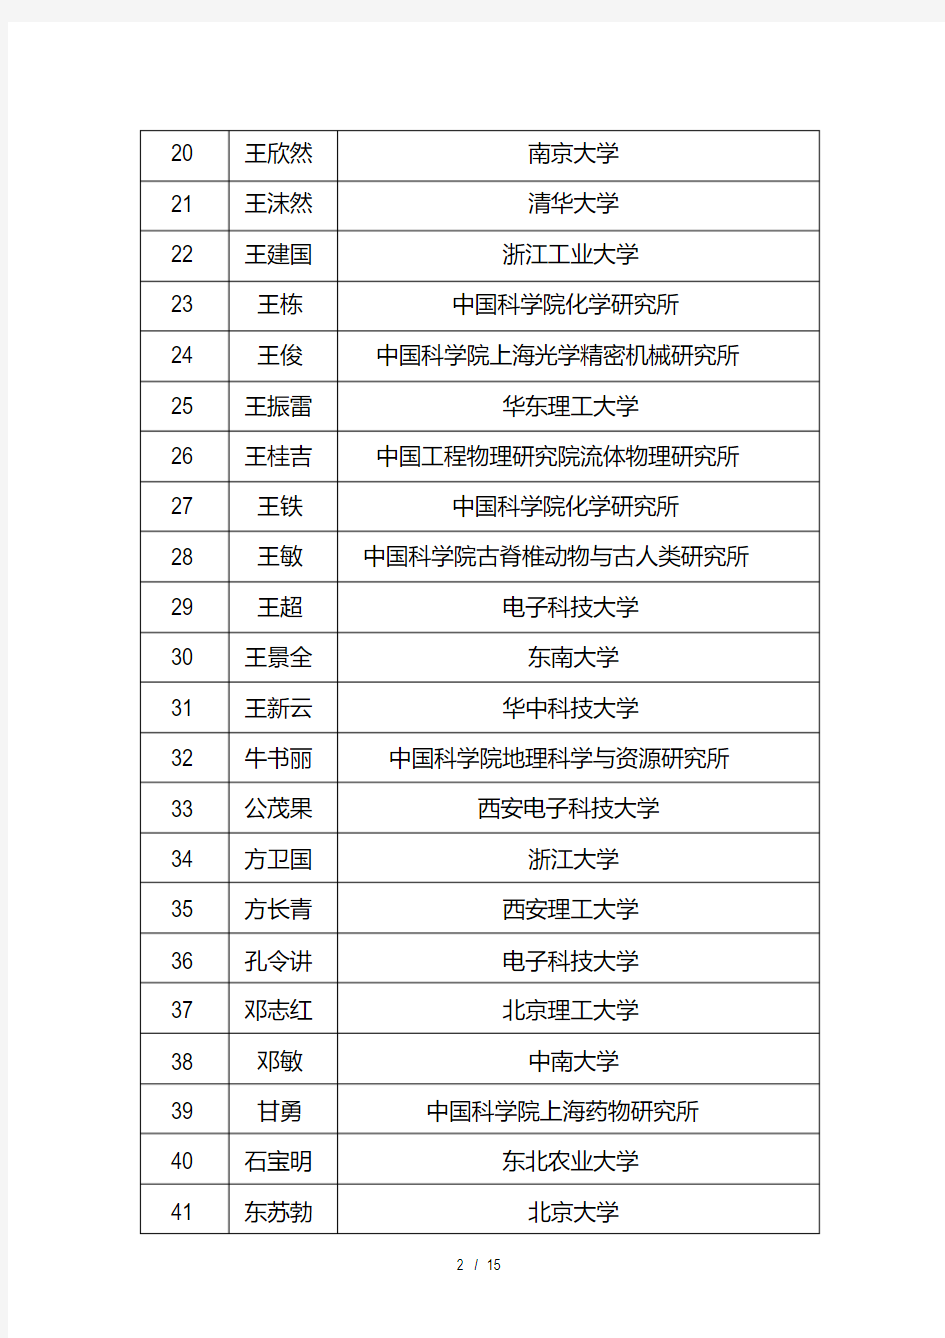 中青年科技创新领军人才拟入选对象名单(306人)